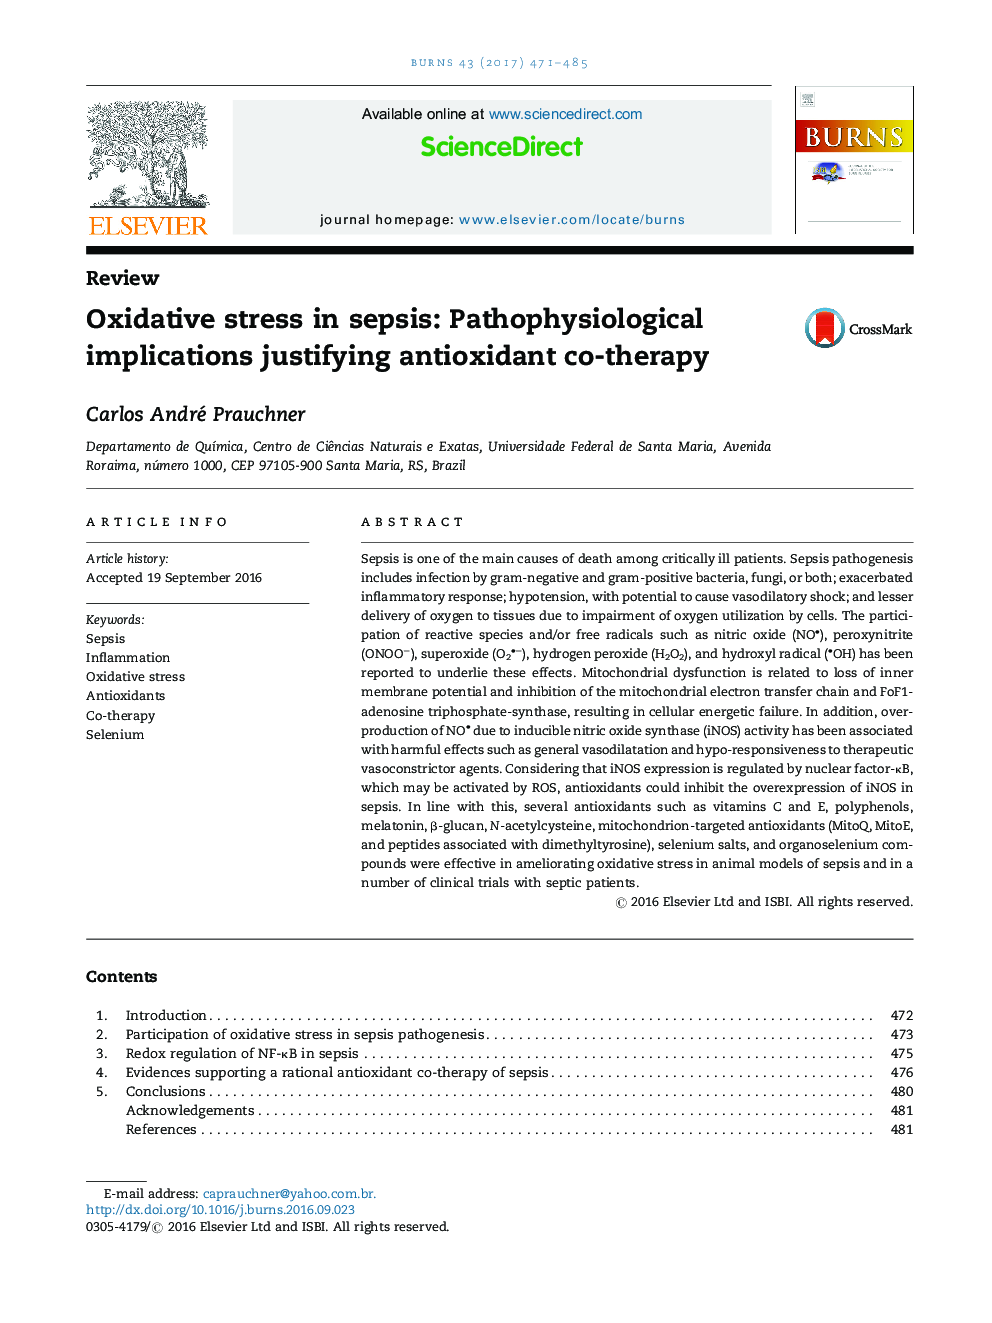 استرس اکسیداتیو در سپسیس: مفاهیم پاتوفیزیولوژی توجیه کننده درمان مشترک با آنتی اکسیدان 